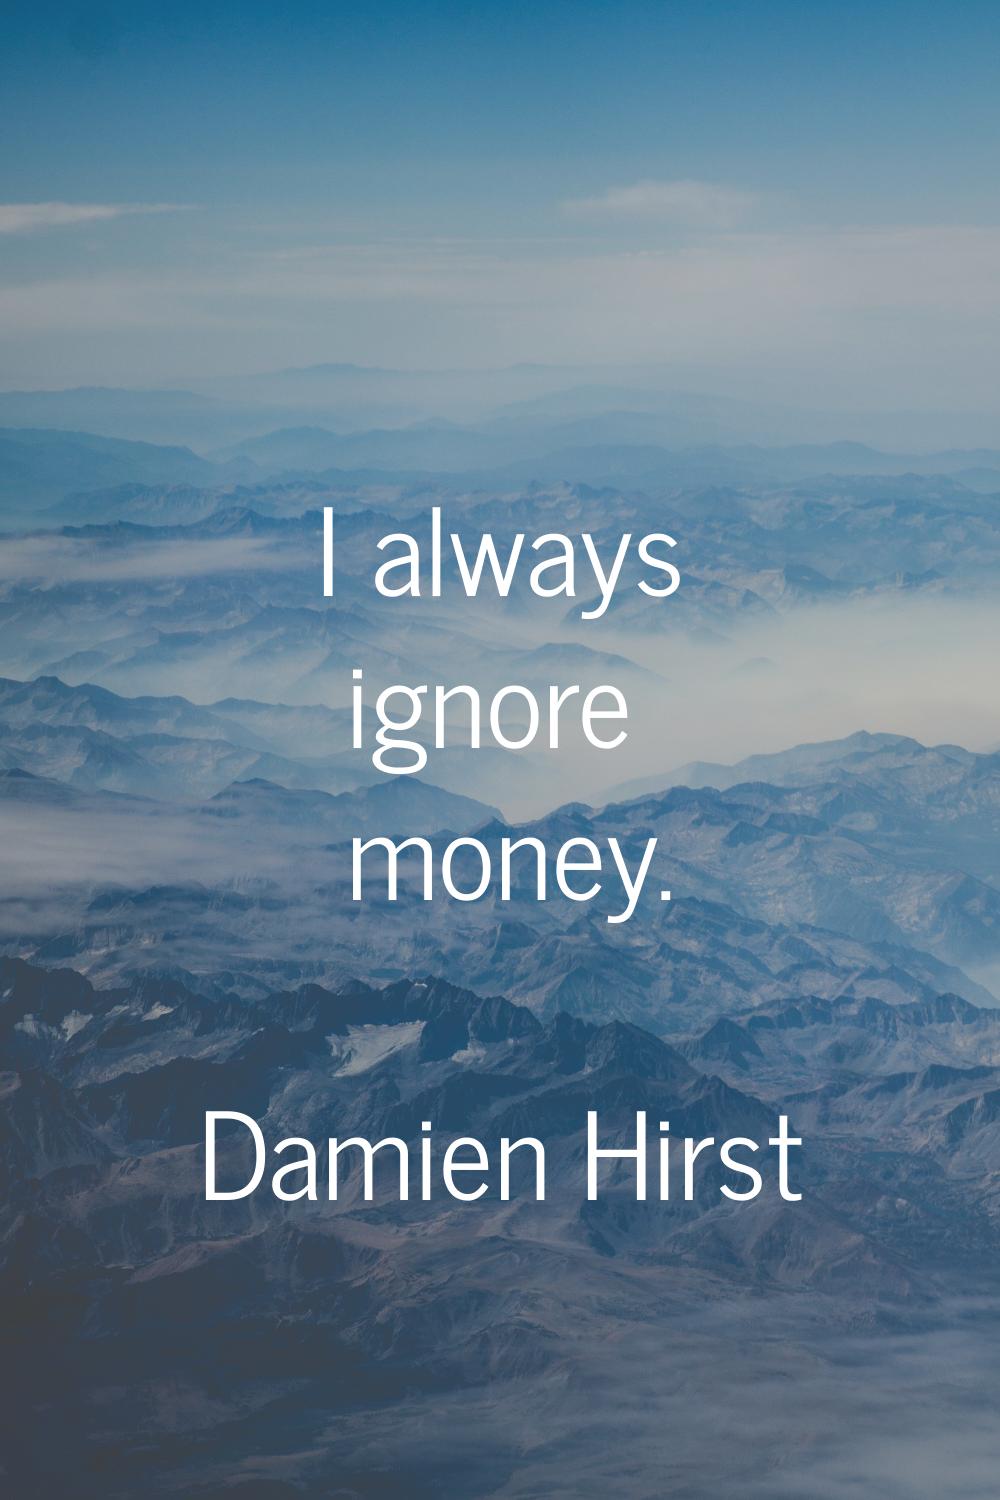 I always ignore money.